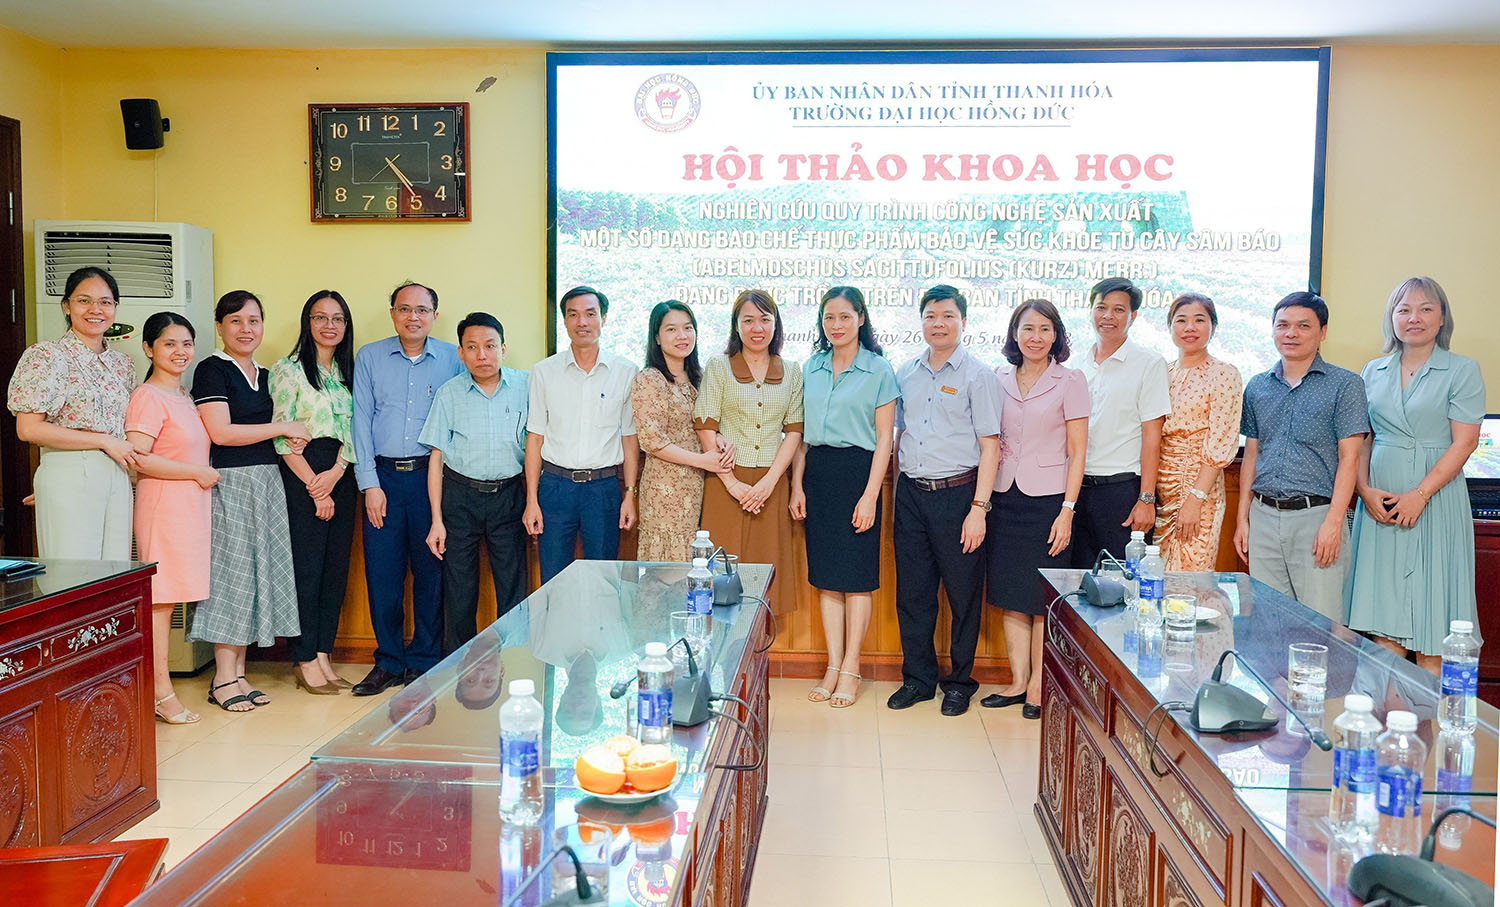 Hội thảo khoa học: Nghiên cứu quy trình công nghệ sản xuất một số dạng bào chế thực phẩm bảo vệ sức khỏe từ cây Sâm báo đang được trồng trên địa bàn tỉnh Thanh Hóa